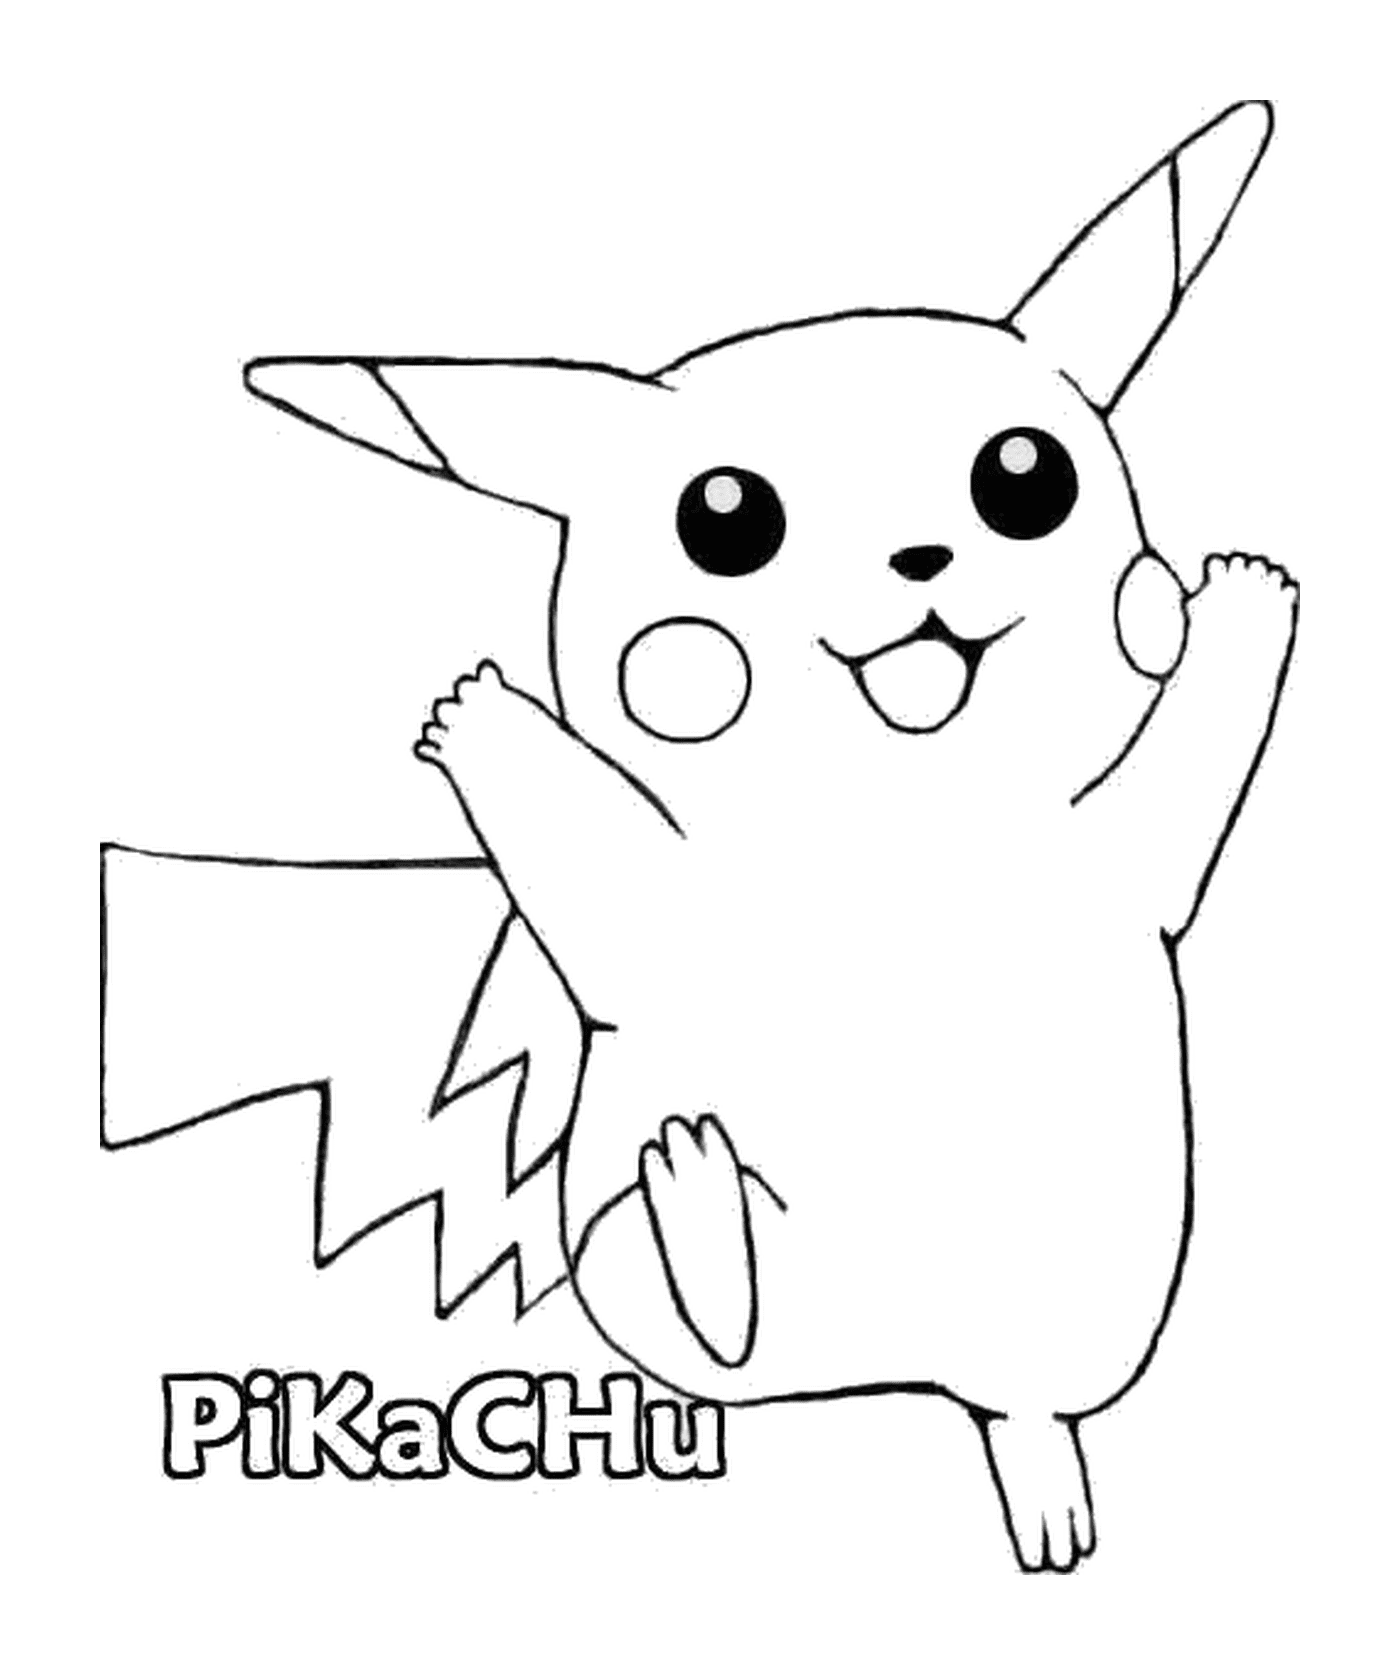  Pikachu : Rato elétrico adorável 